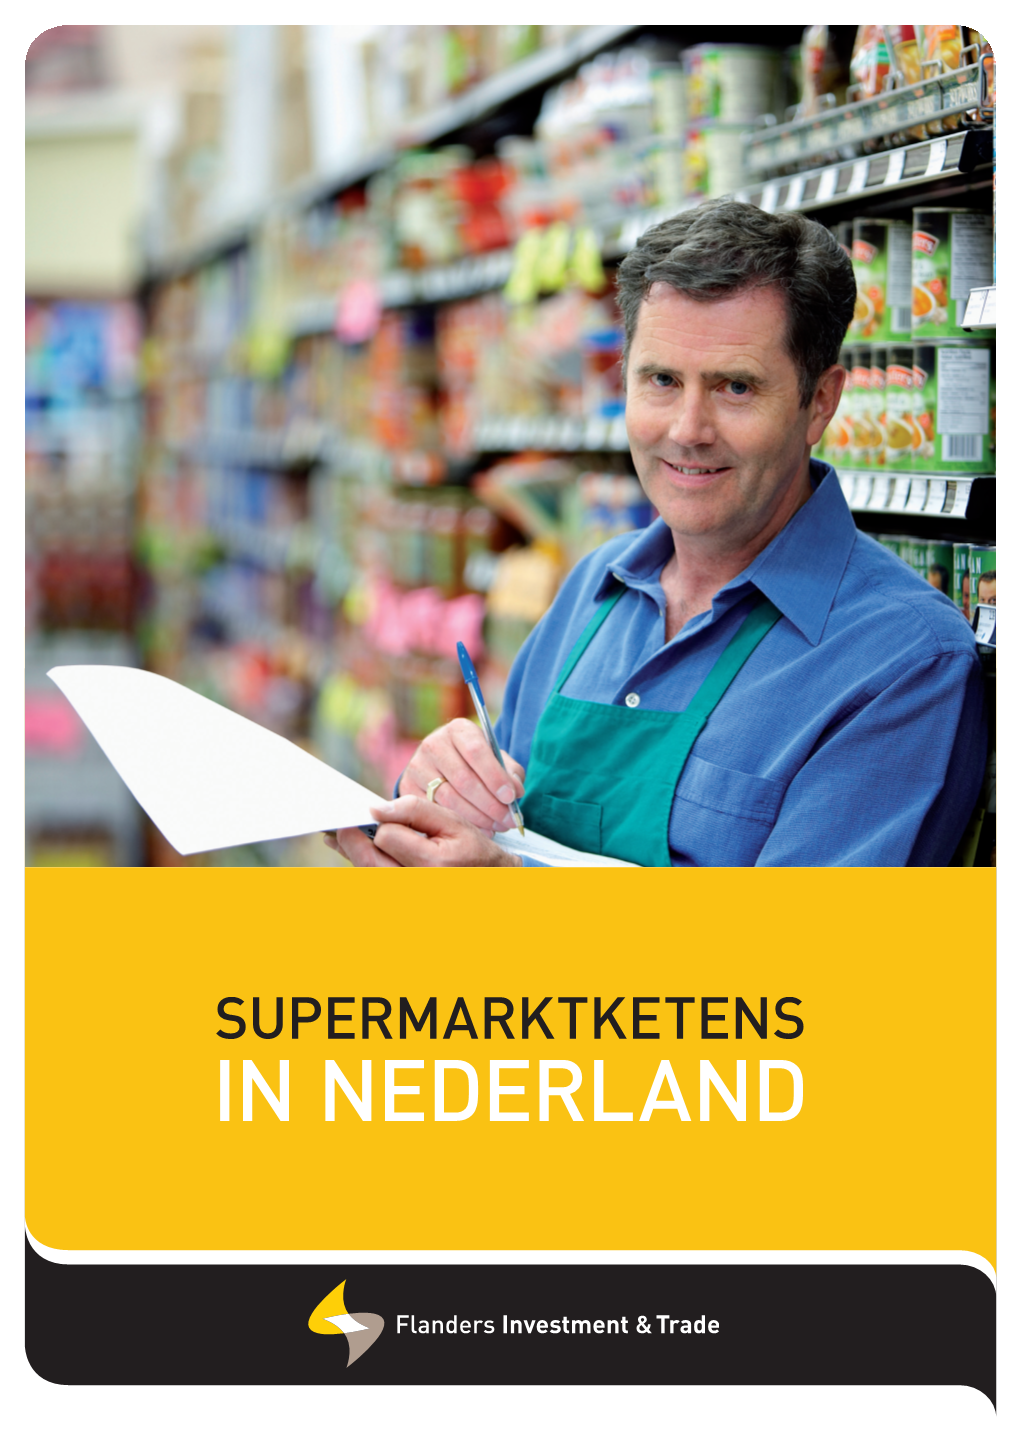 Supermarktketens in Nederland